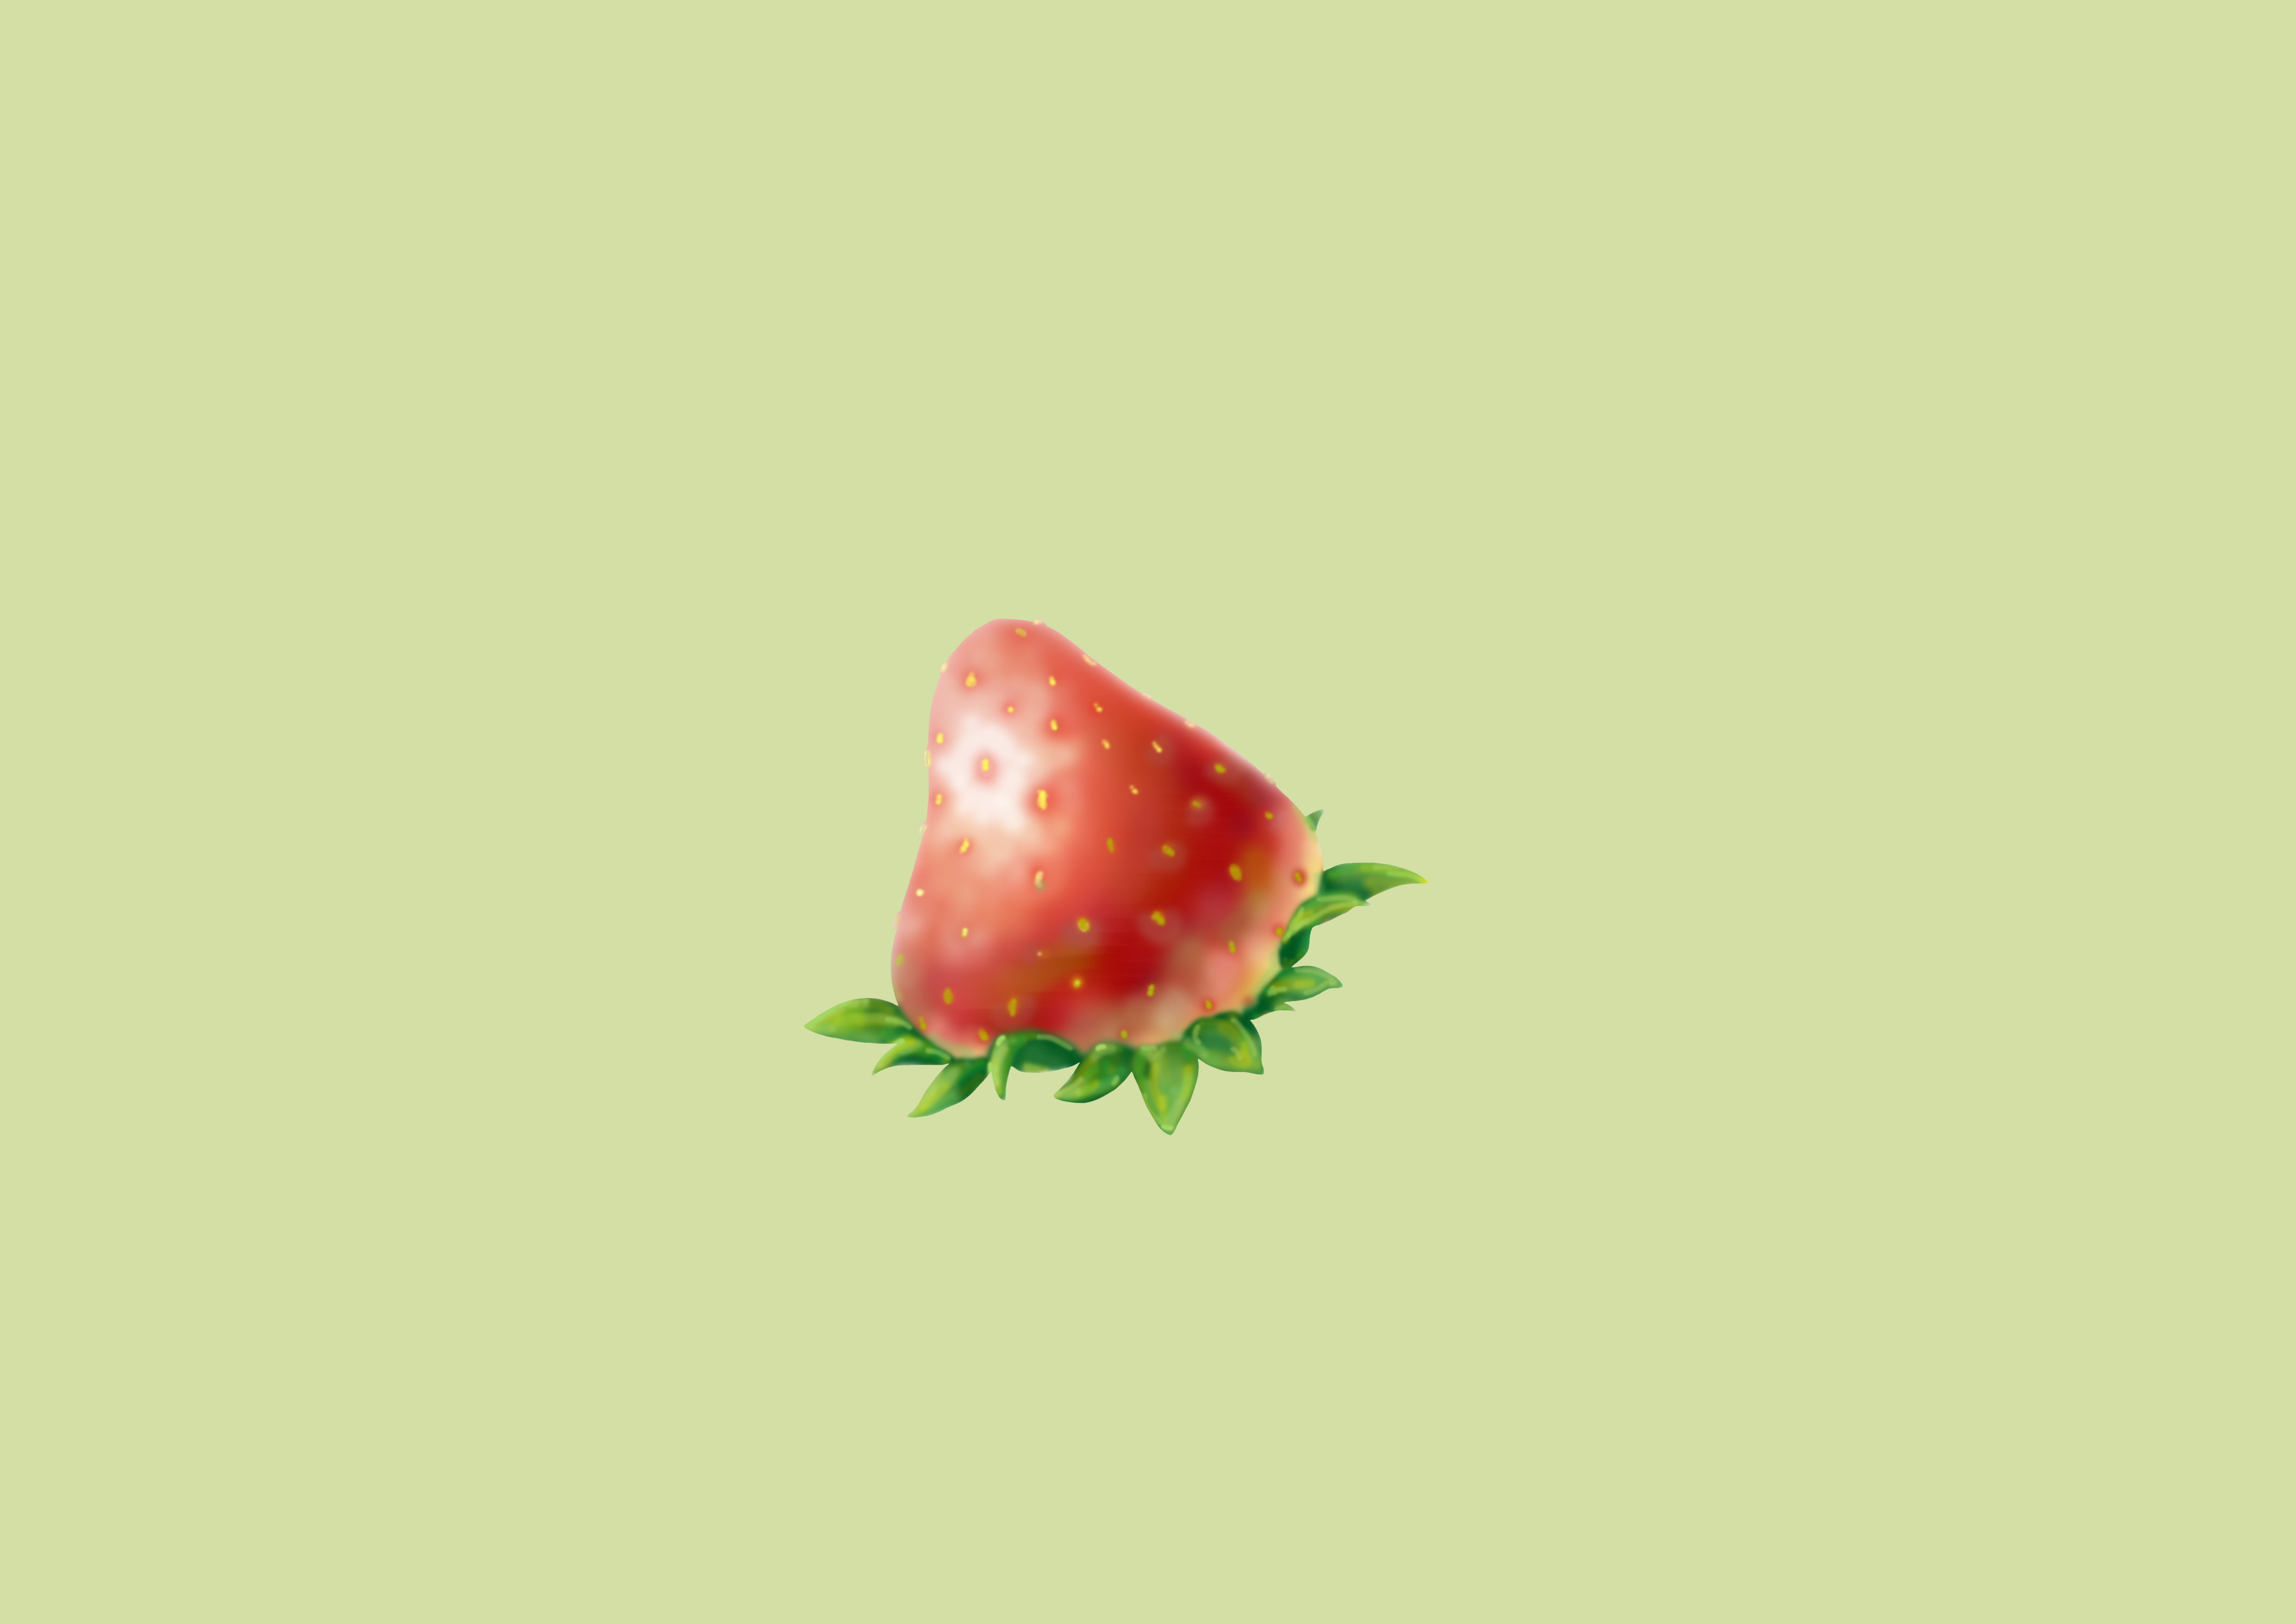 我喜欢的男生刚好也是草莓味插画图片壁纸